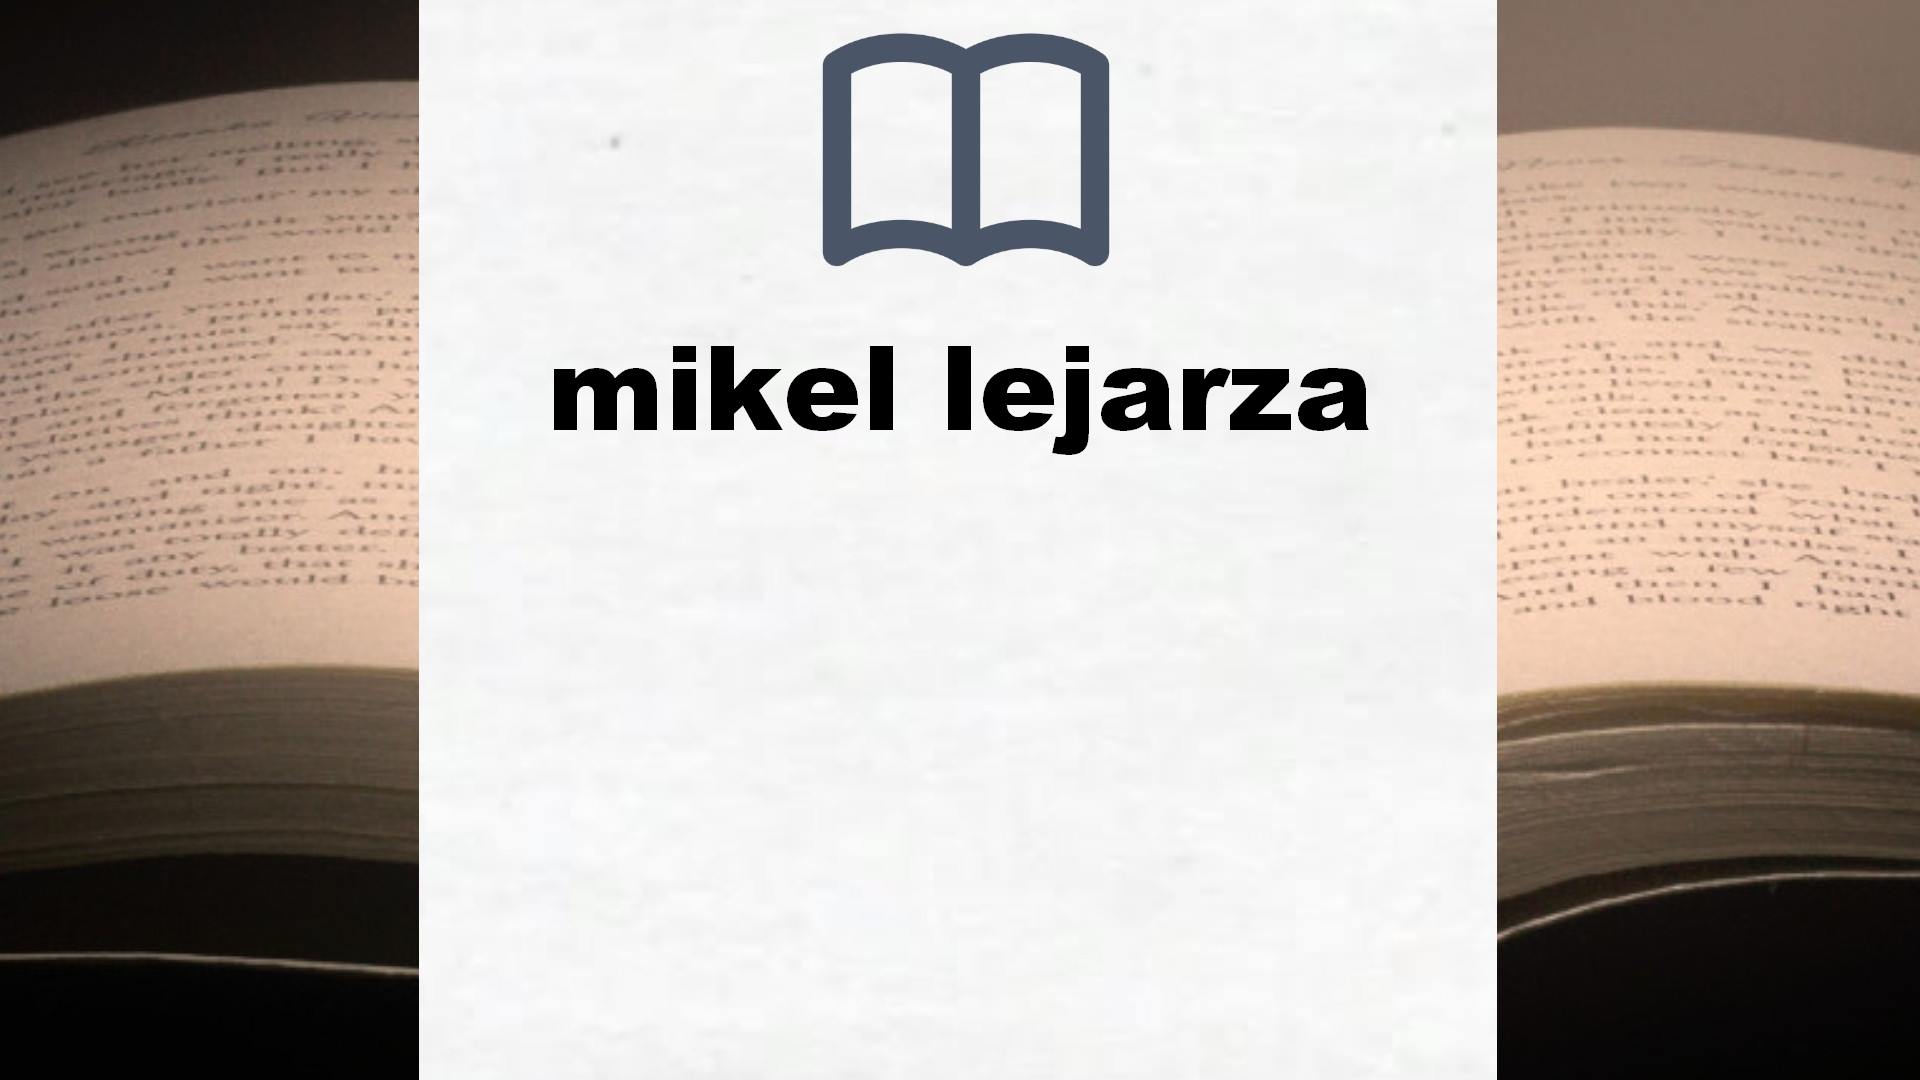 Libros sobre mikel lejarza